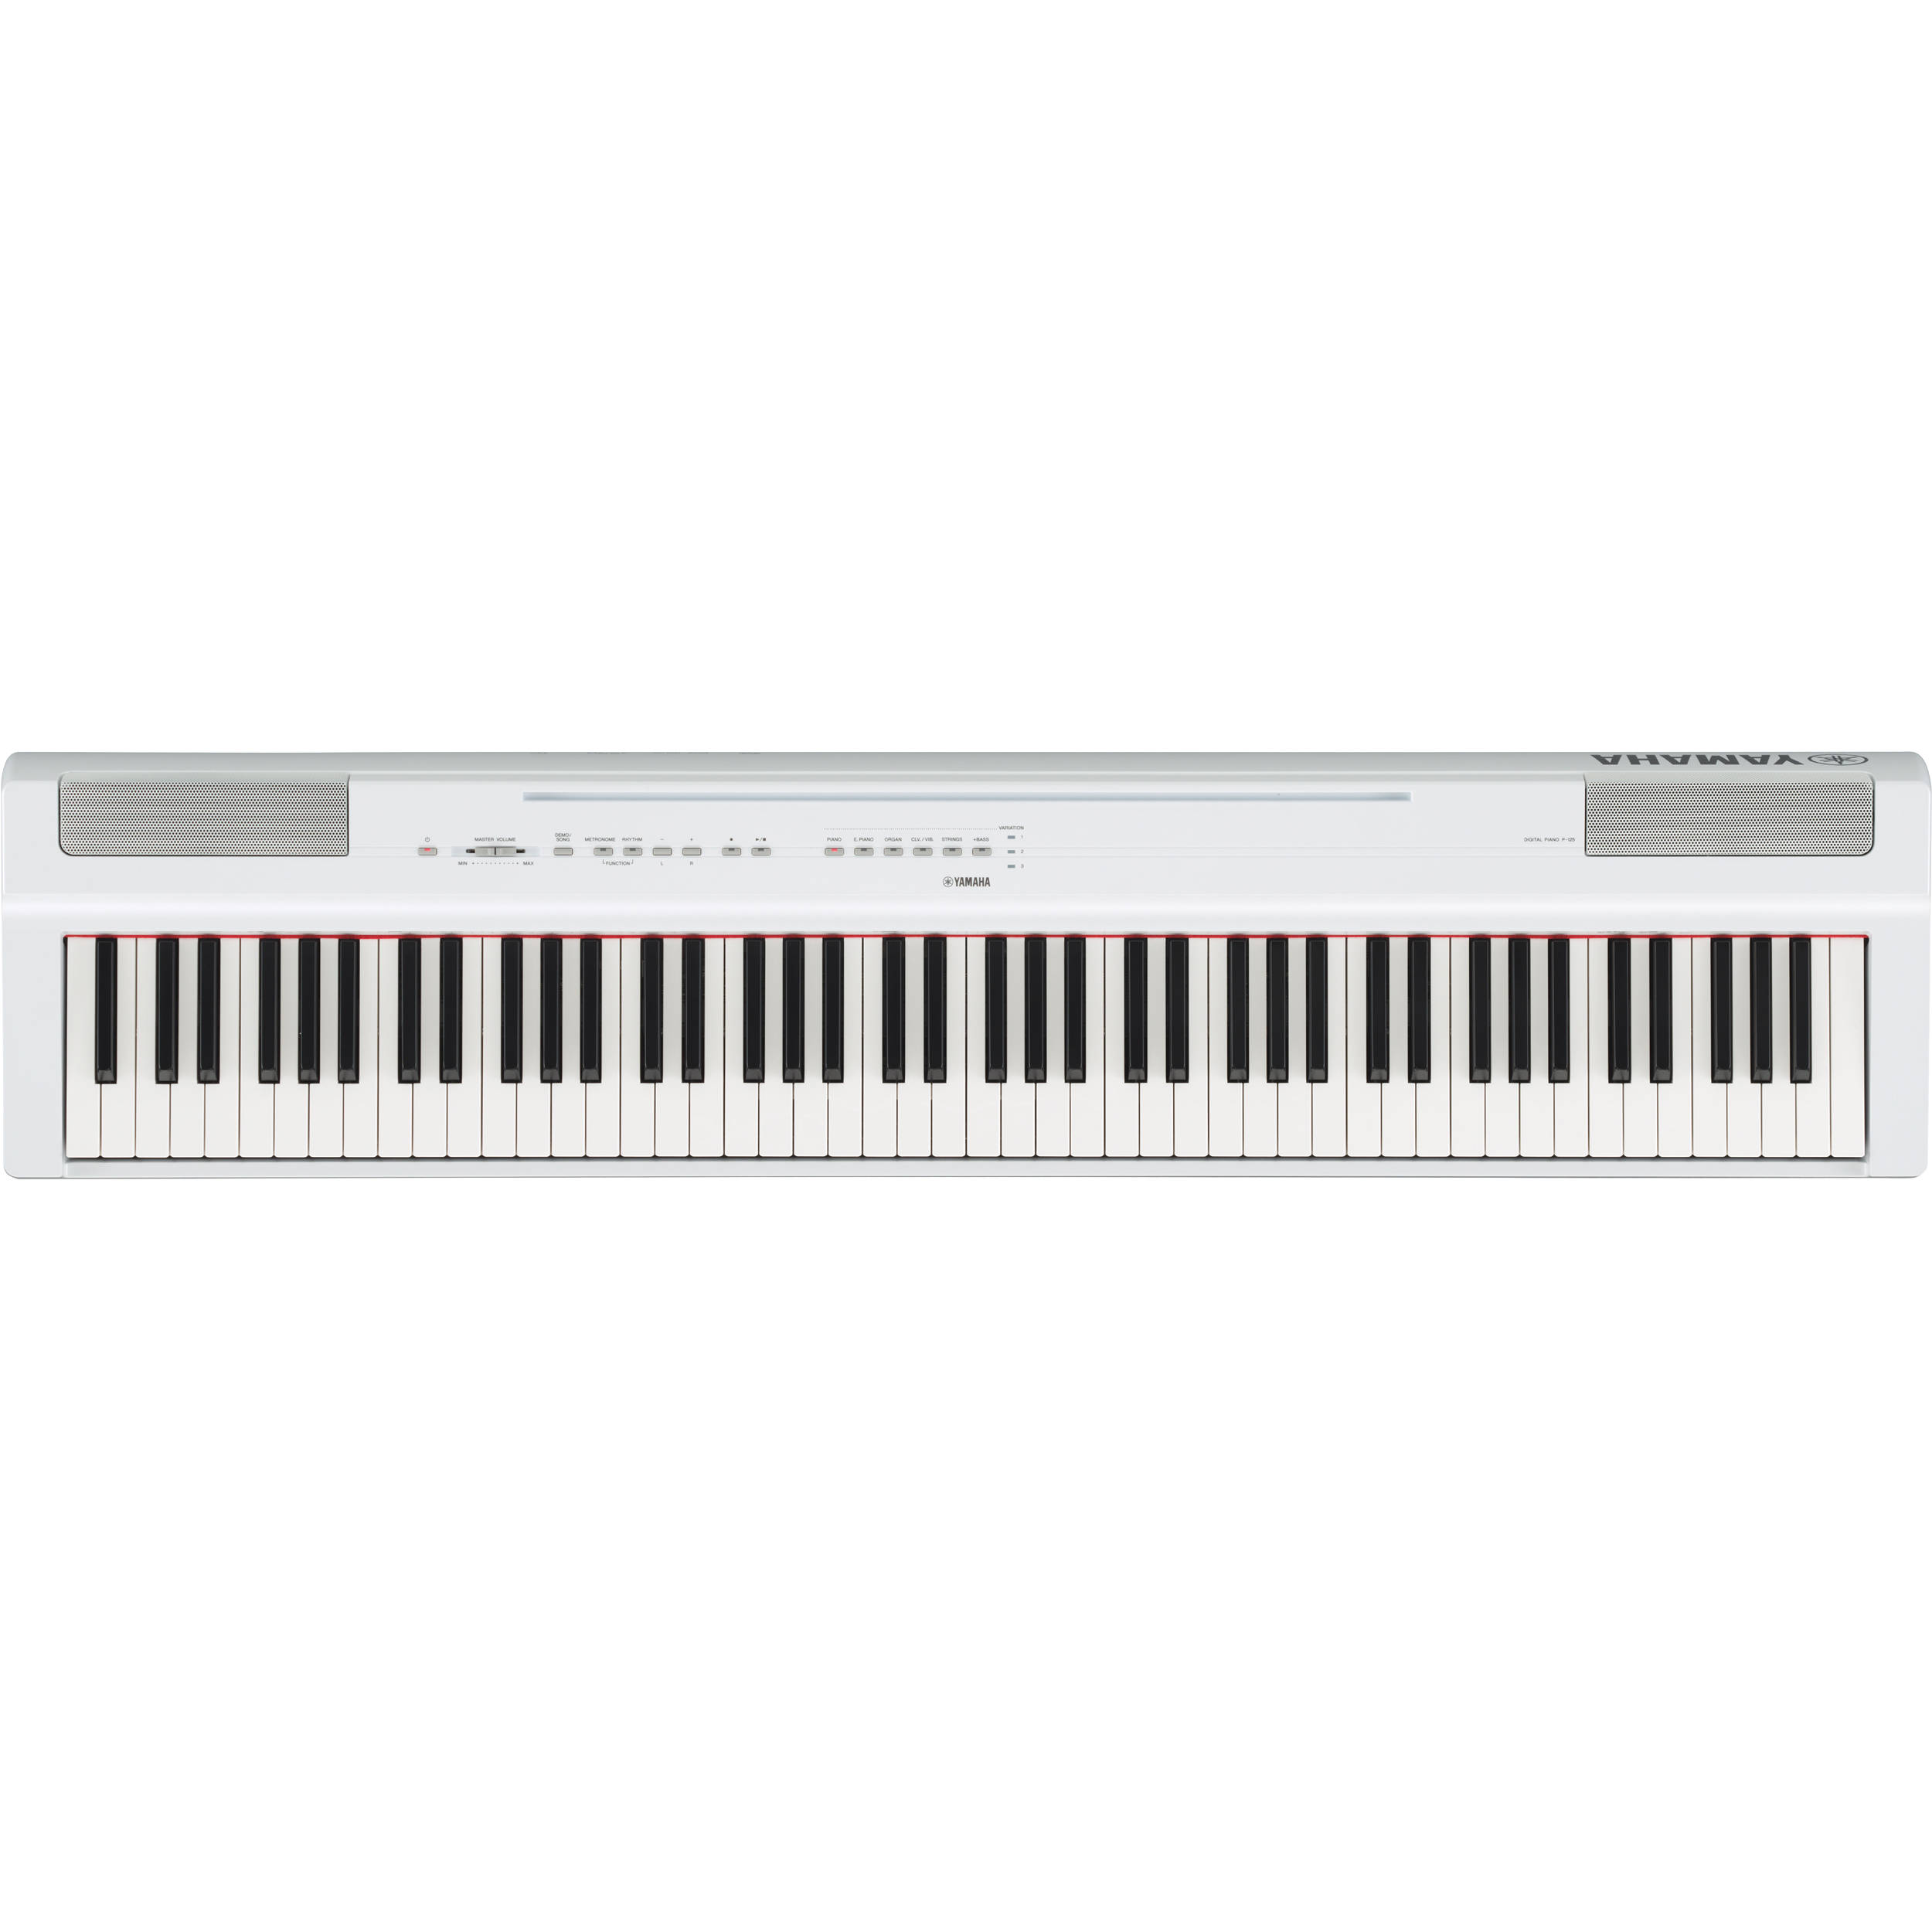 yamaha toy piano